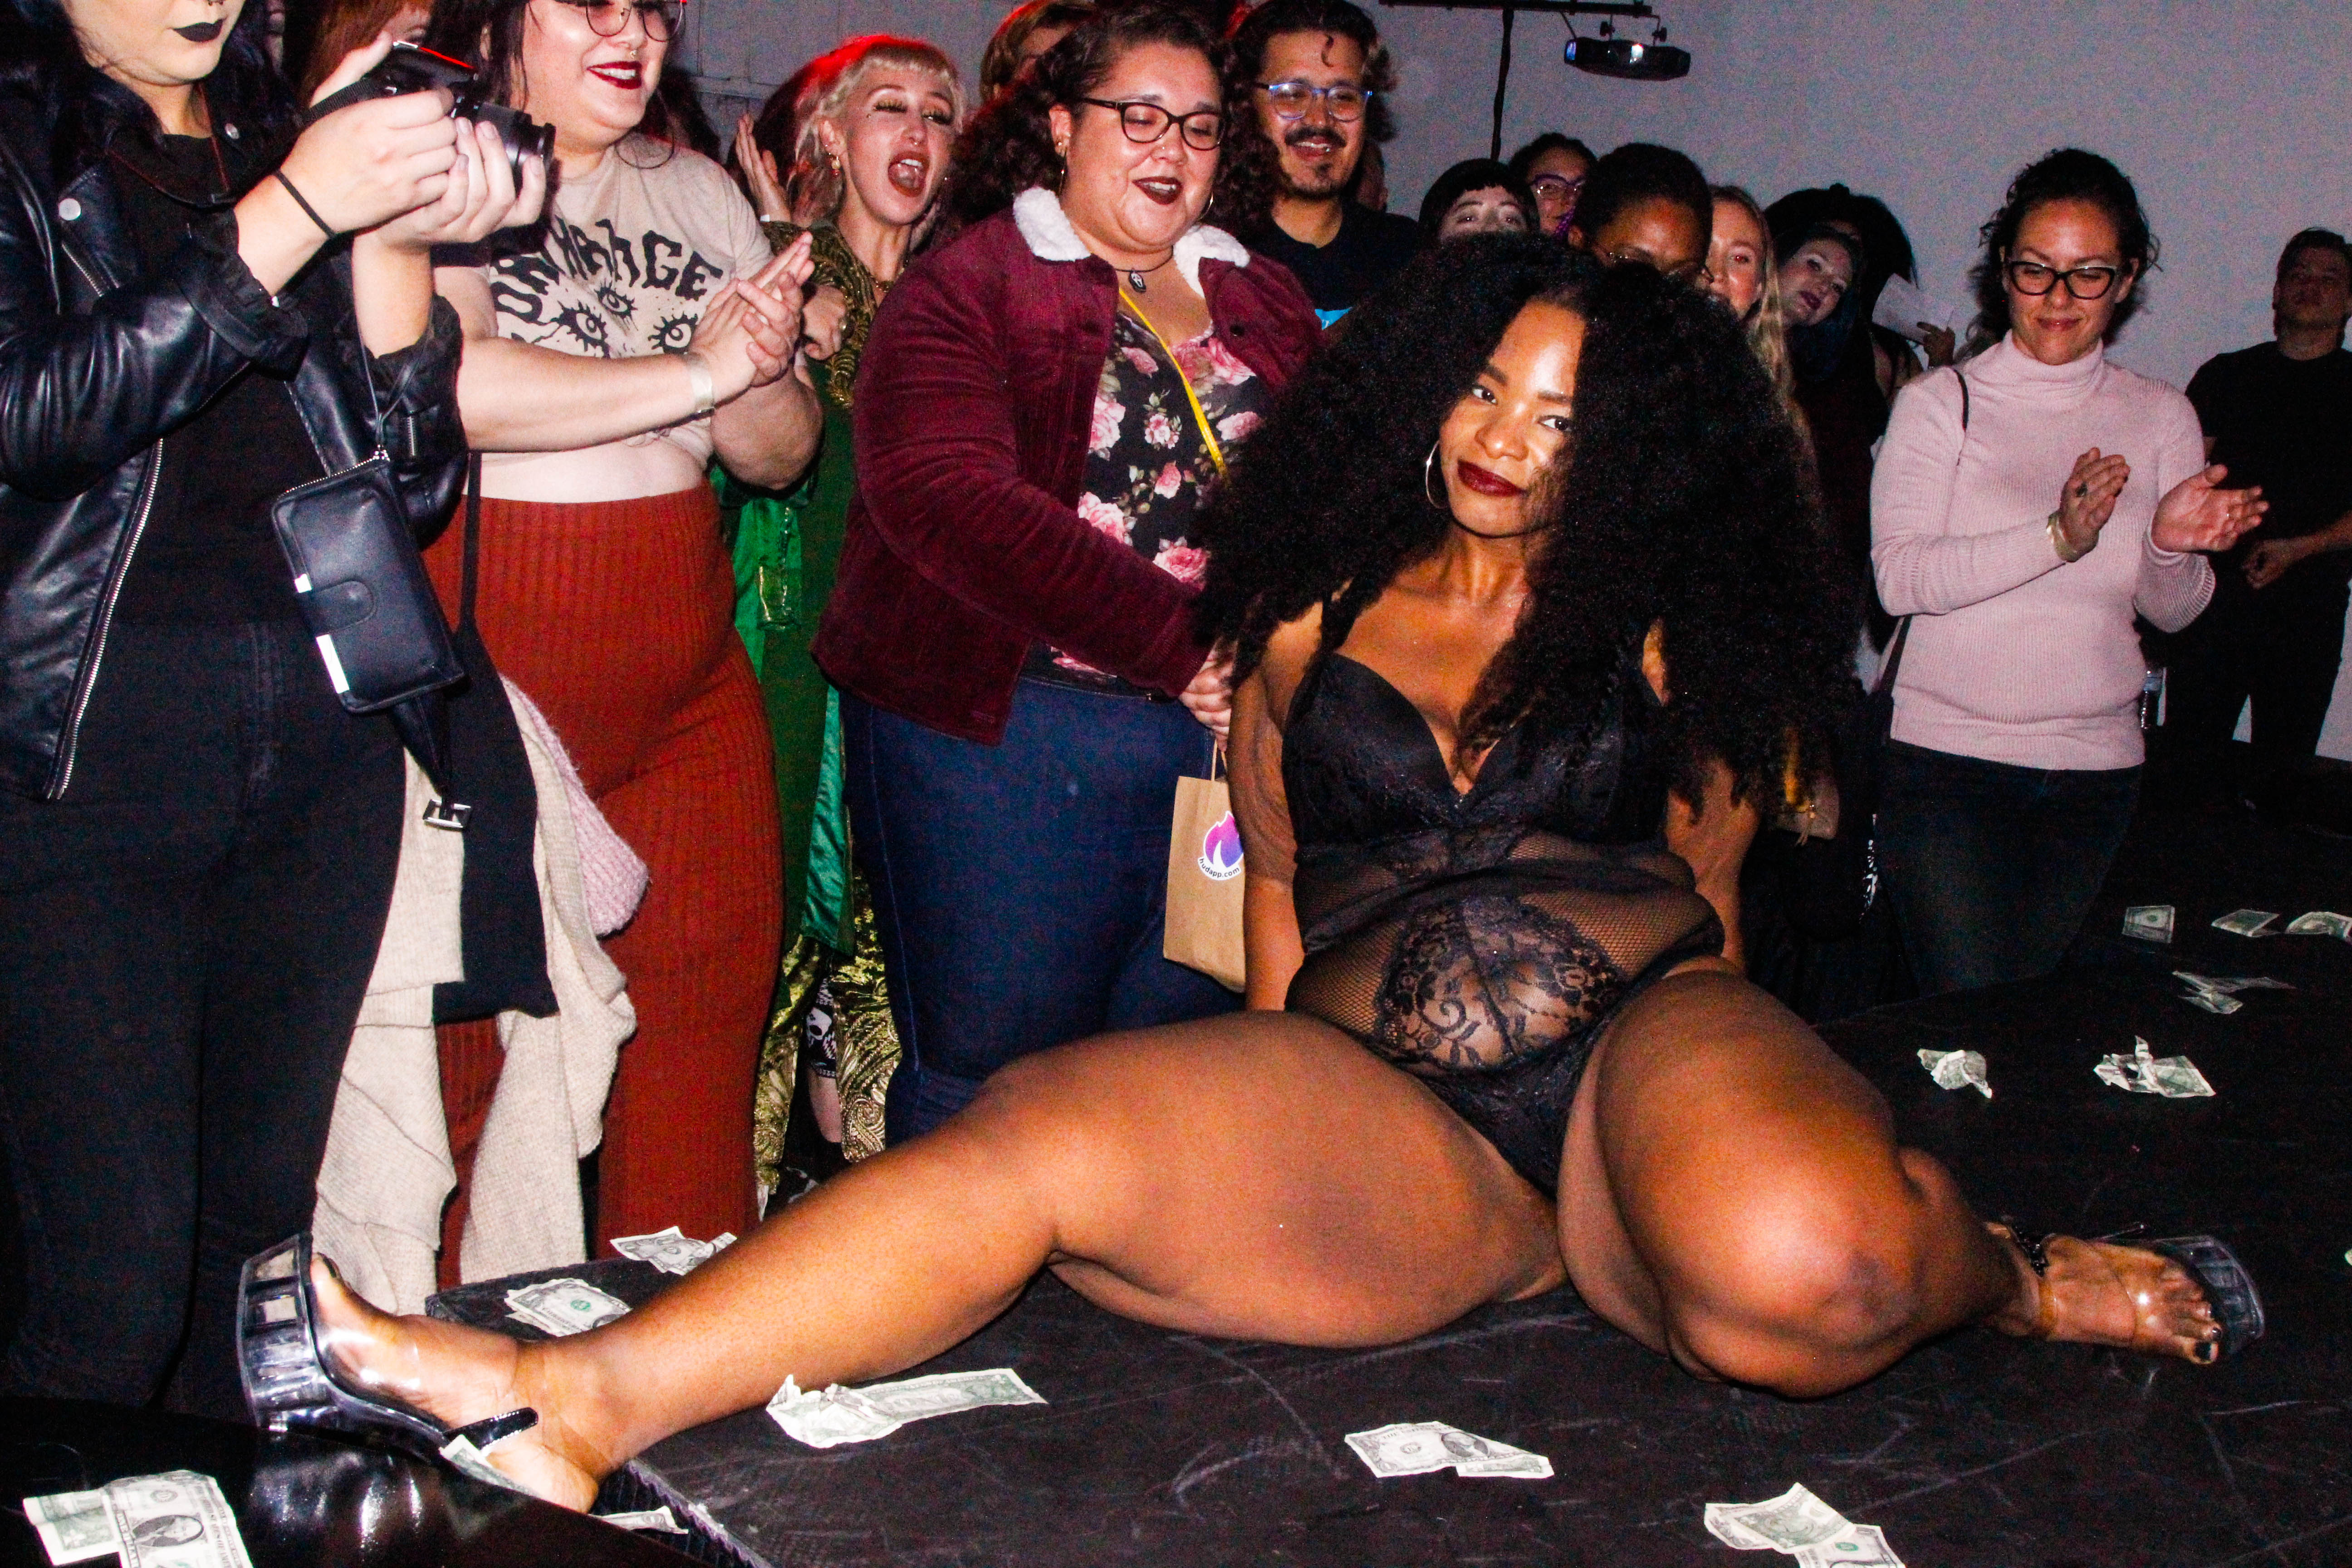 A stripper on a stage